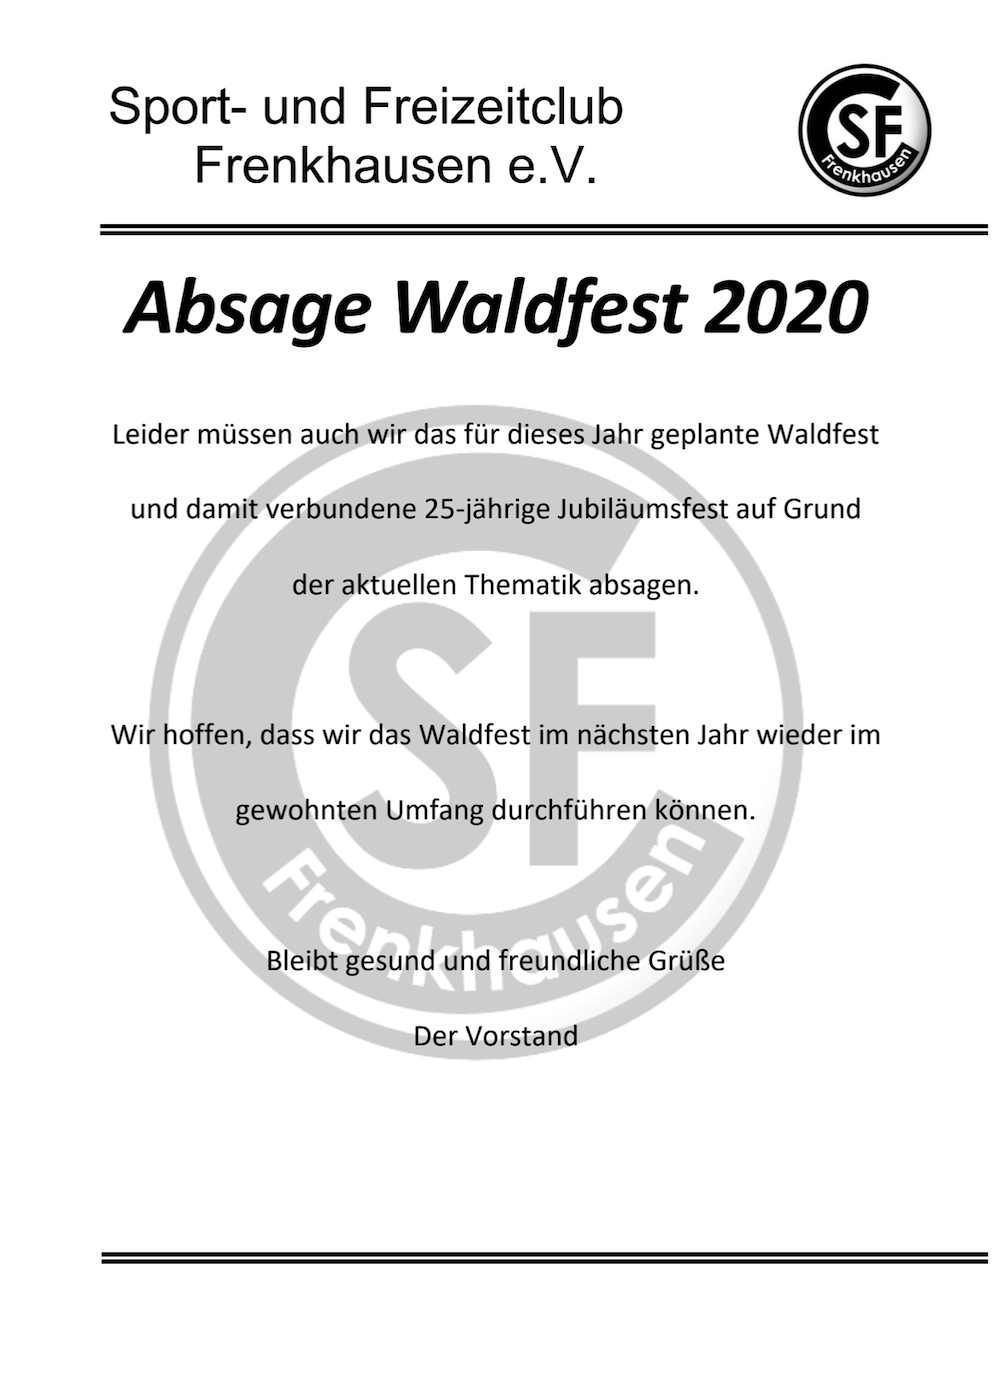 Absage Waldfest 2020